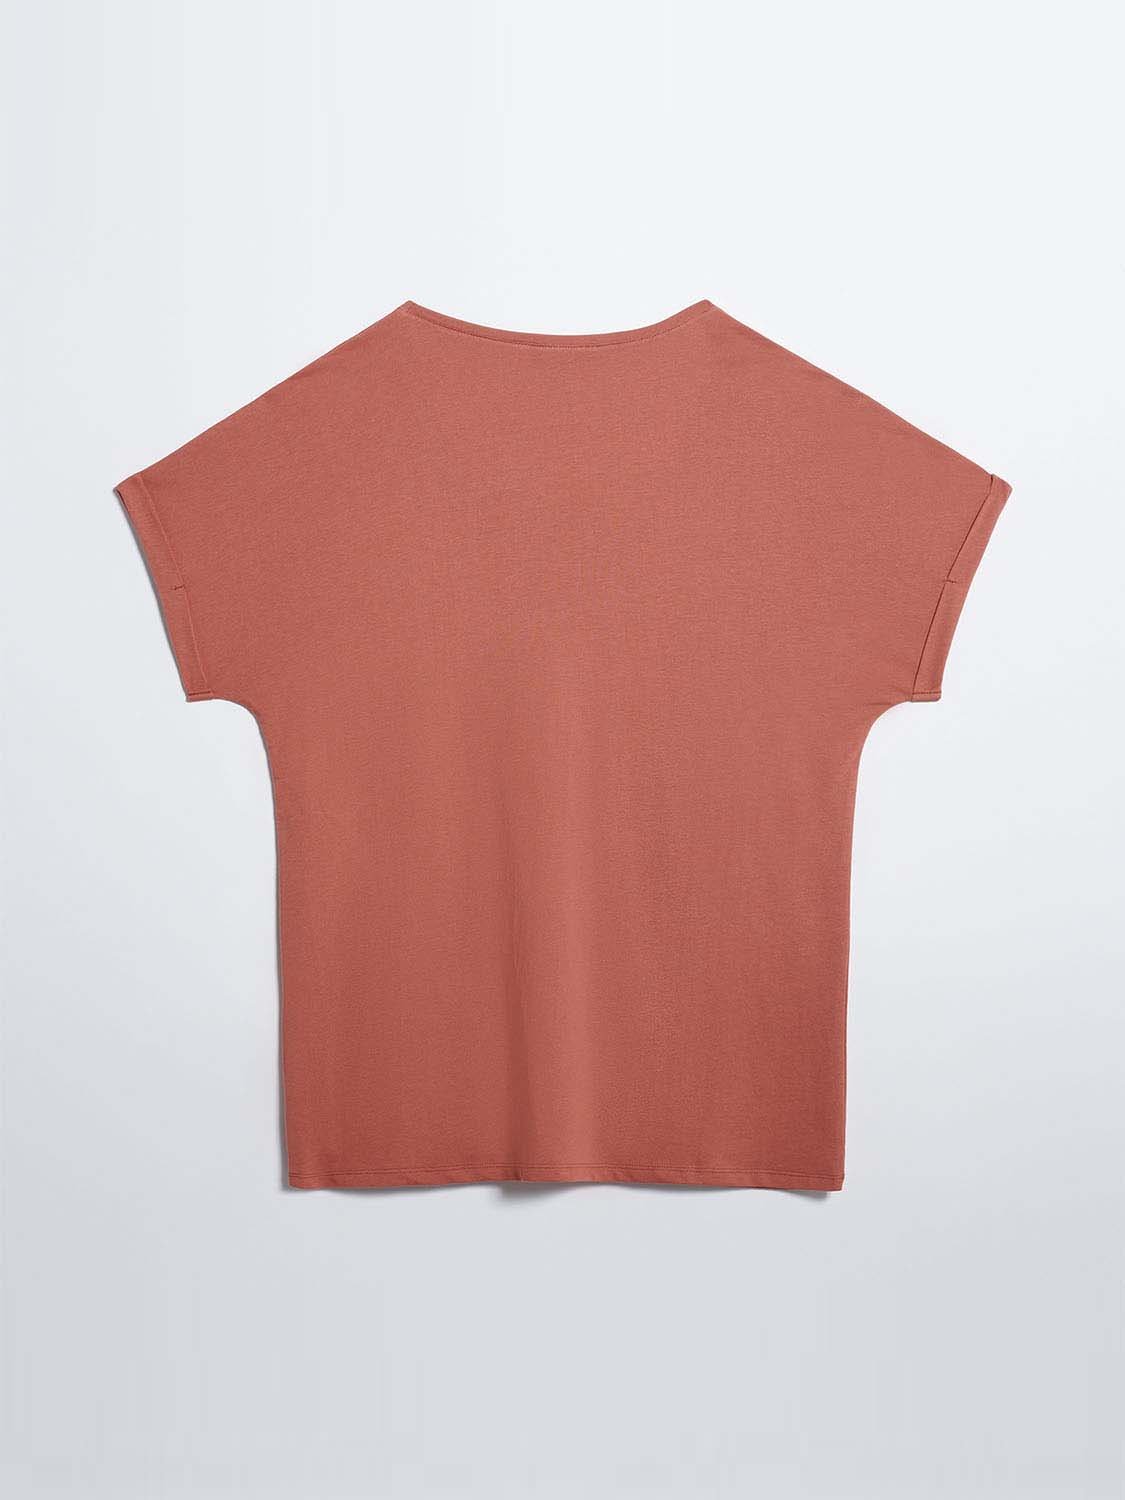 Tee-Shirt Femme Print Coton Biologique Marron